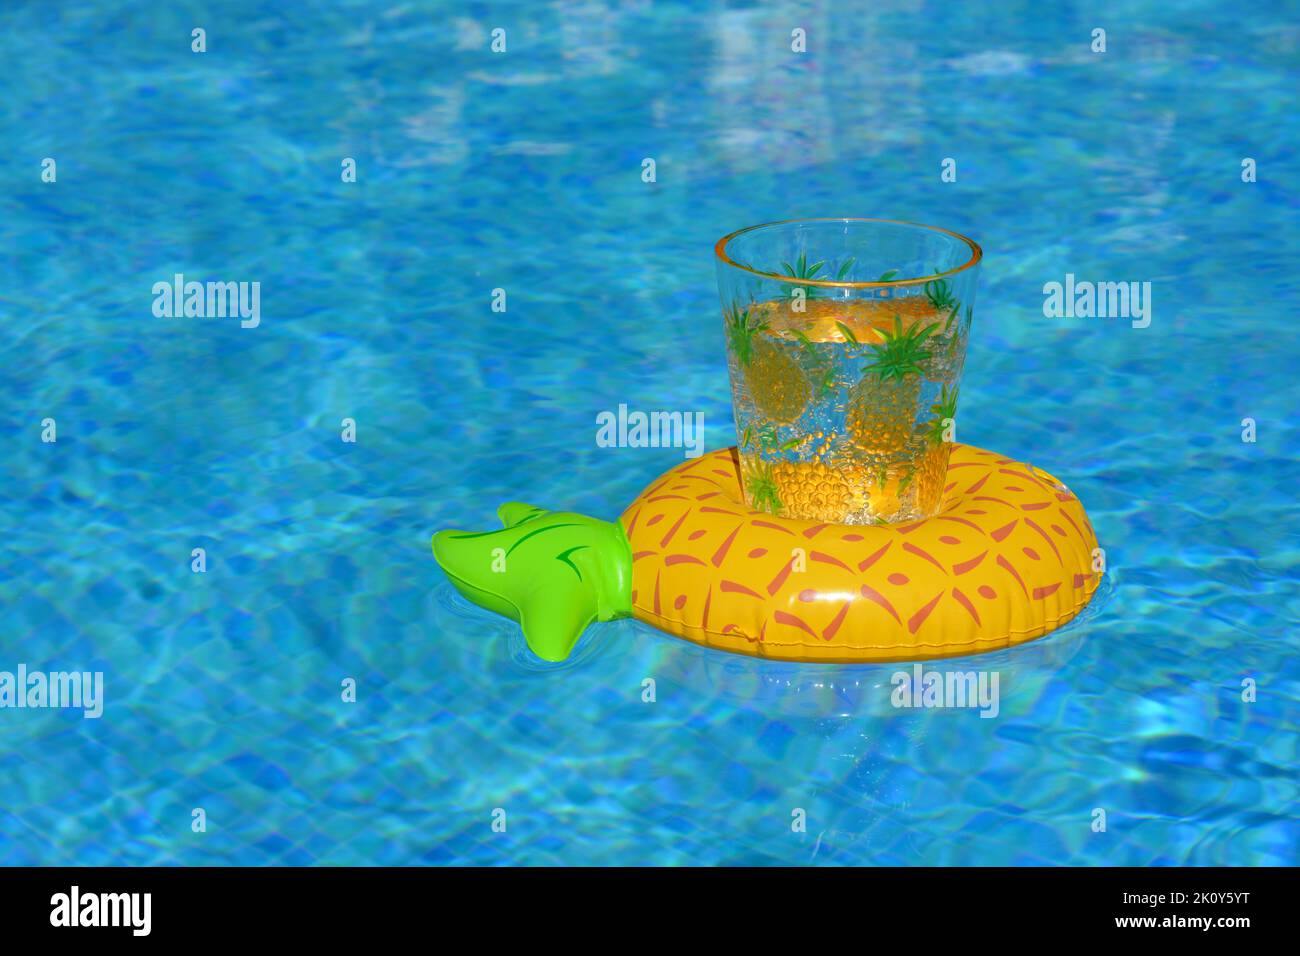 Man drink pool -Fotos und -Bildmaterial in hoher Auflösung - Seite 3 - Alamy